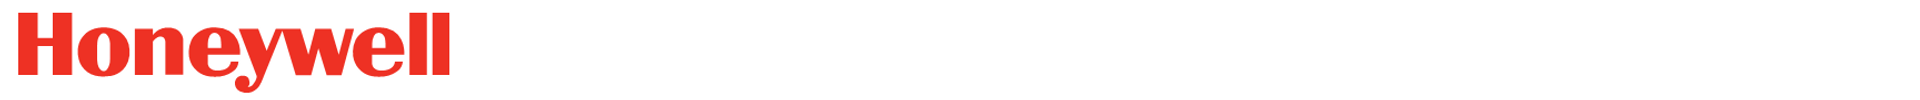 alt_text=logo der Honeywell